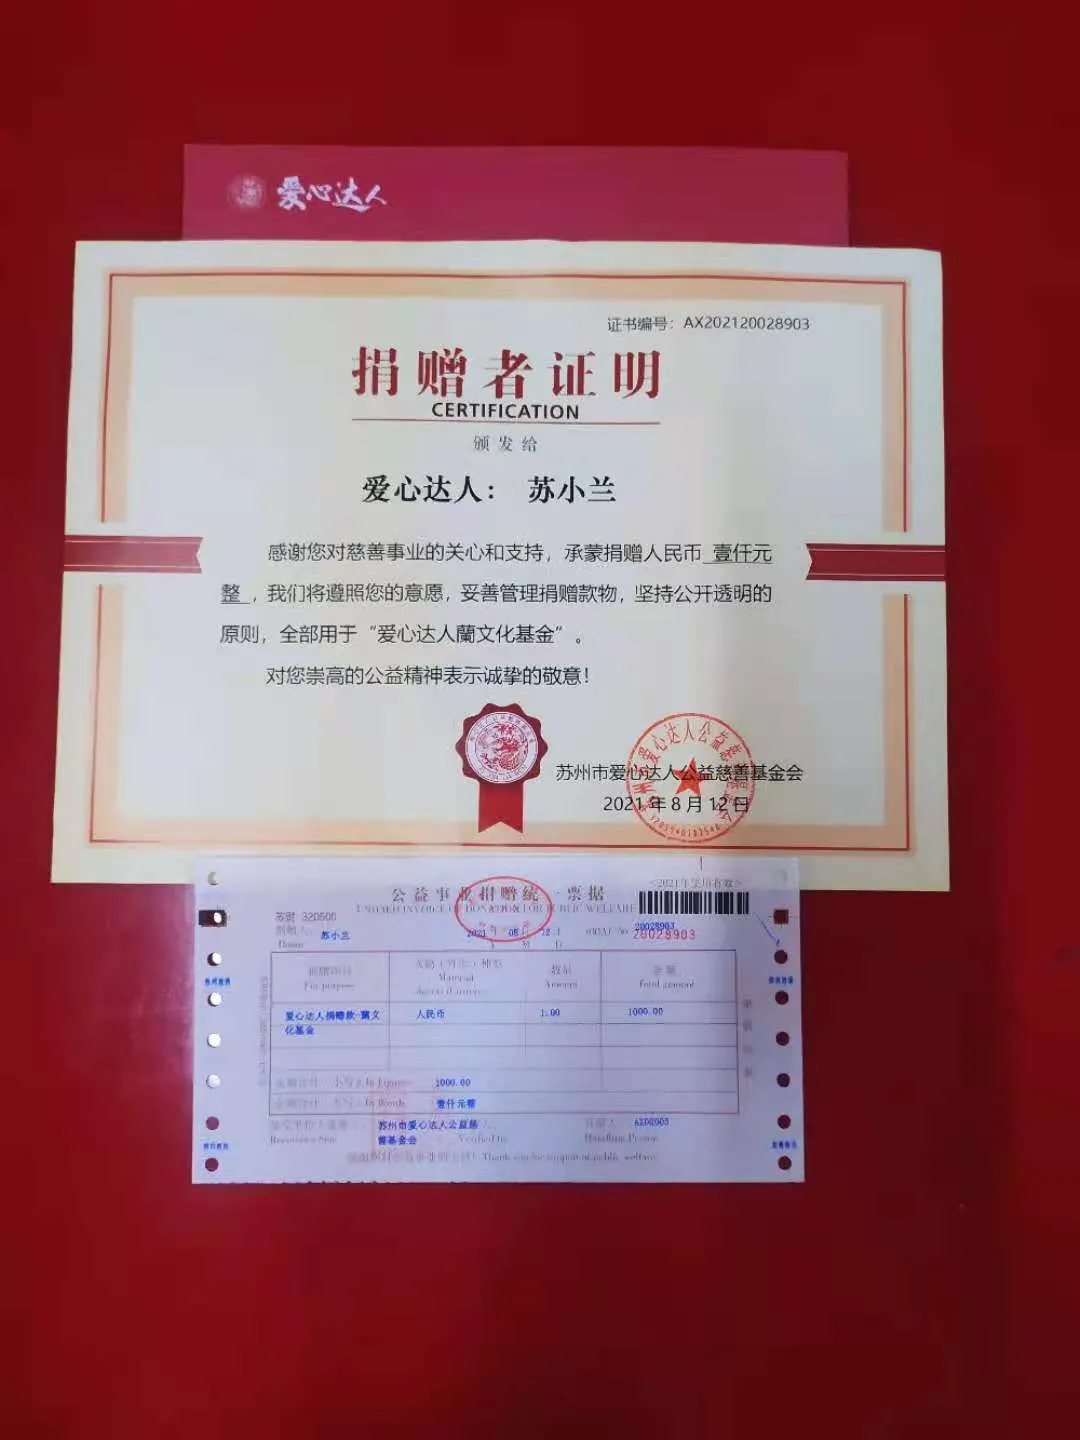 苏州市爱心达人捐赠西藏日喀则江孜县重孜乡小学图书室